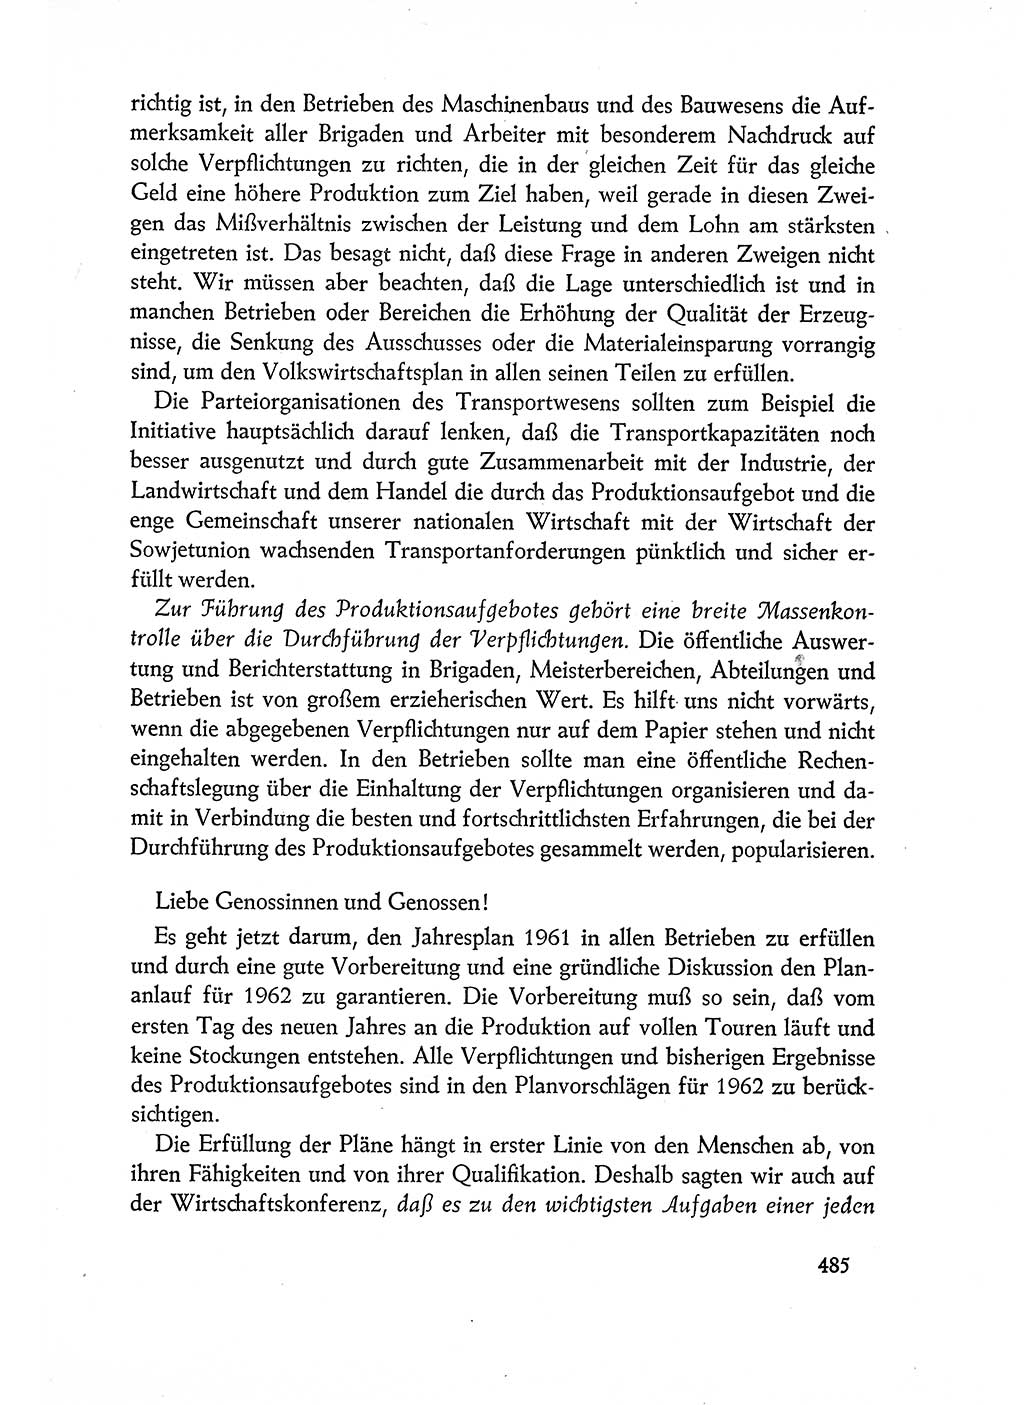 Dokumente der Sozialistischen Einheitspartei Deutschlands (SED) [Deutsche Demokratische Republik (DDR)] 1960-1961, Seite 485 (Dok. SED DDR 1960-1961, S. 485)